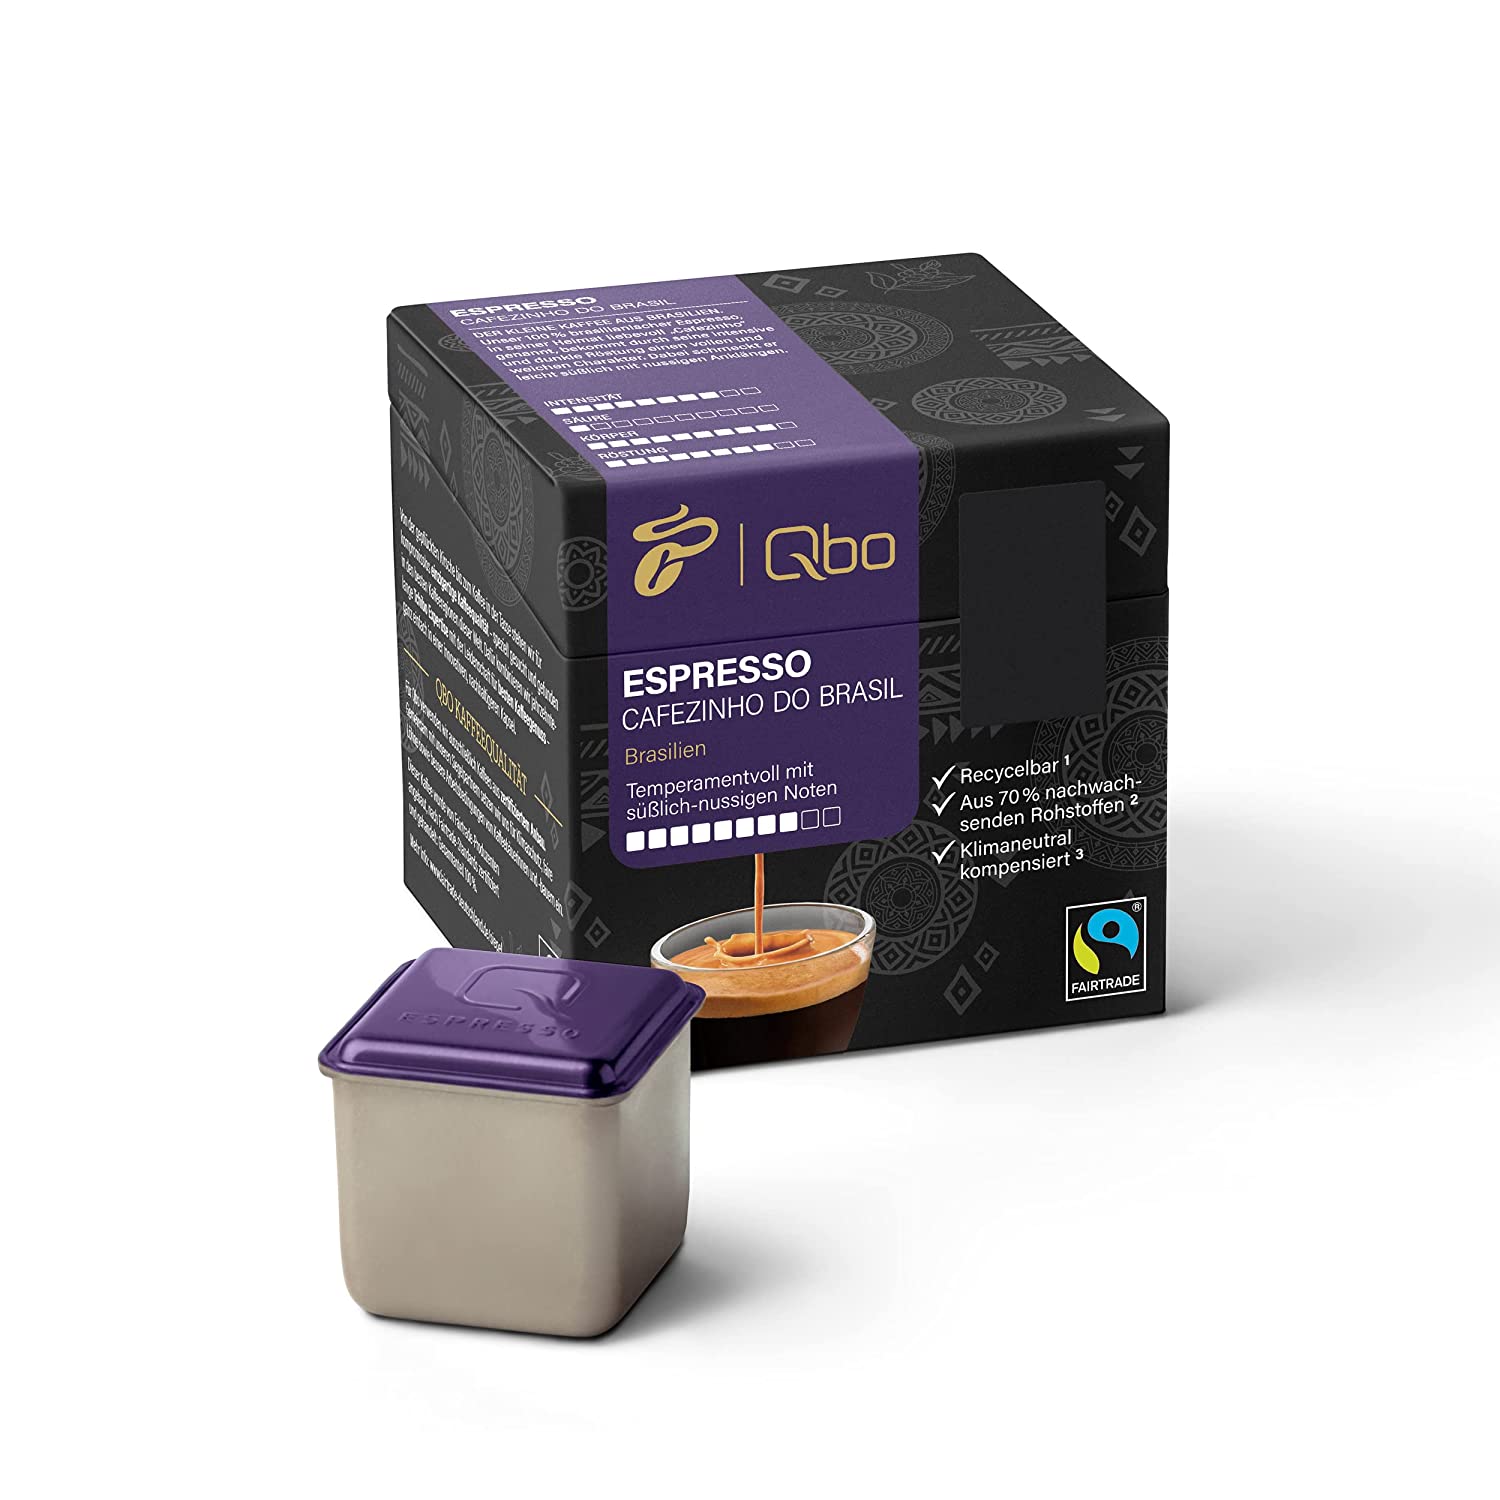 Tchibo Qbo Espresso Cafezinho do Brasil Premium Kaffeekapseln, 8 Stück (Espresso, Intensität 8/10, temperamentvoll & nussig), nachhaltig, aus 70% nachwachsenden Rohstoffen & klimaneutral kompensiert